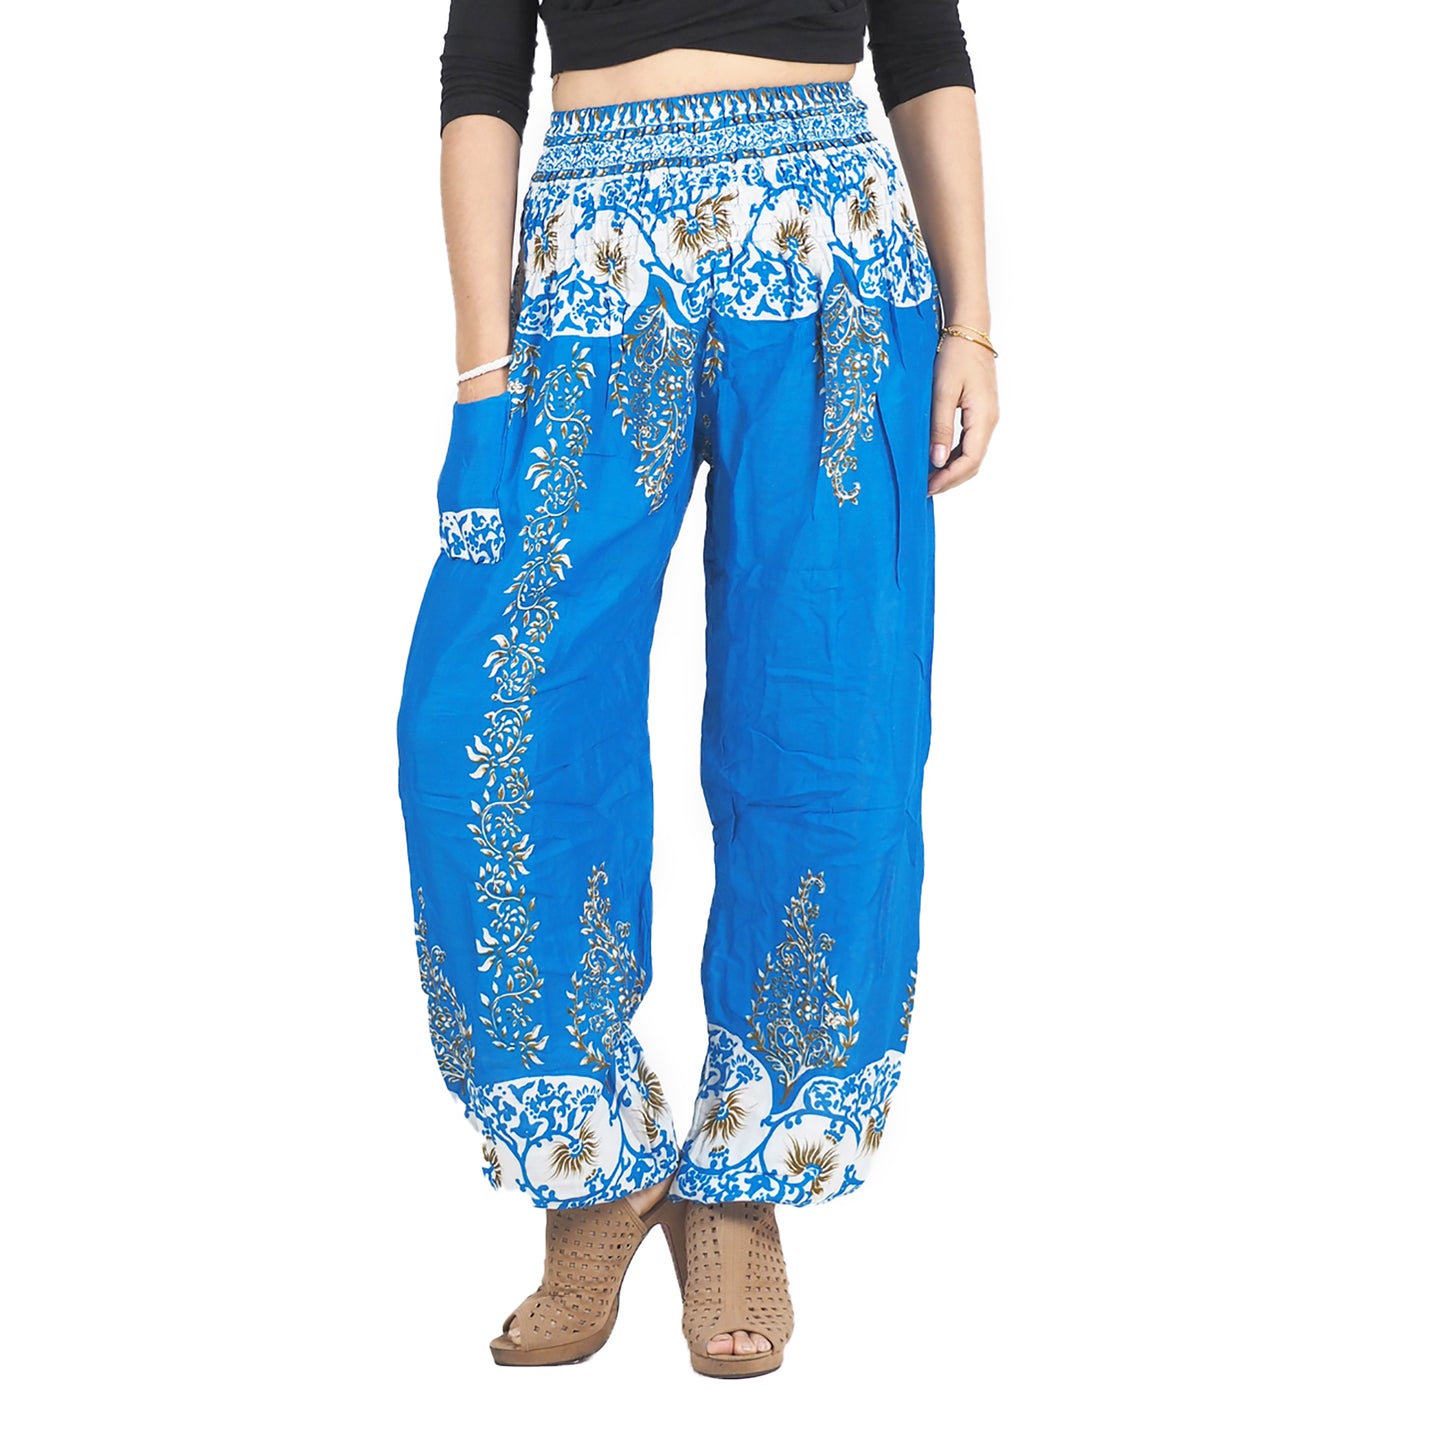 Flower chain 167 women harem pants in Light Blue PP0004 020167 03